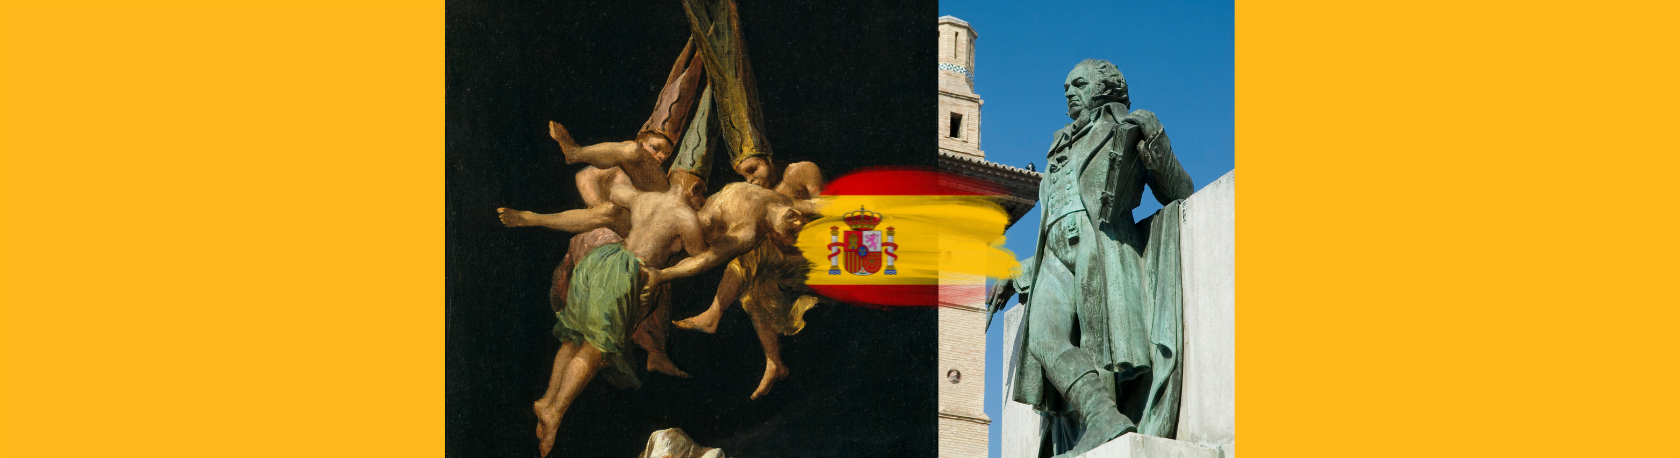 ¿Sabías que el famoso pintor Francisco Goya quedó sordo a los 47 años? - Easy Español